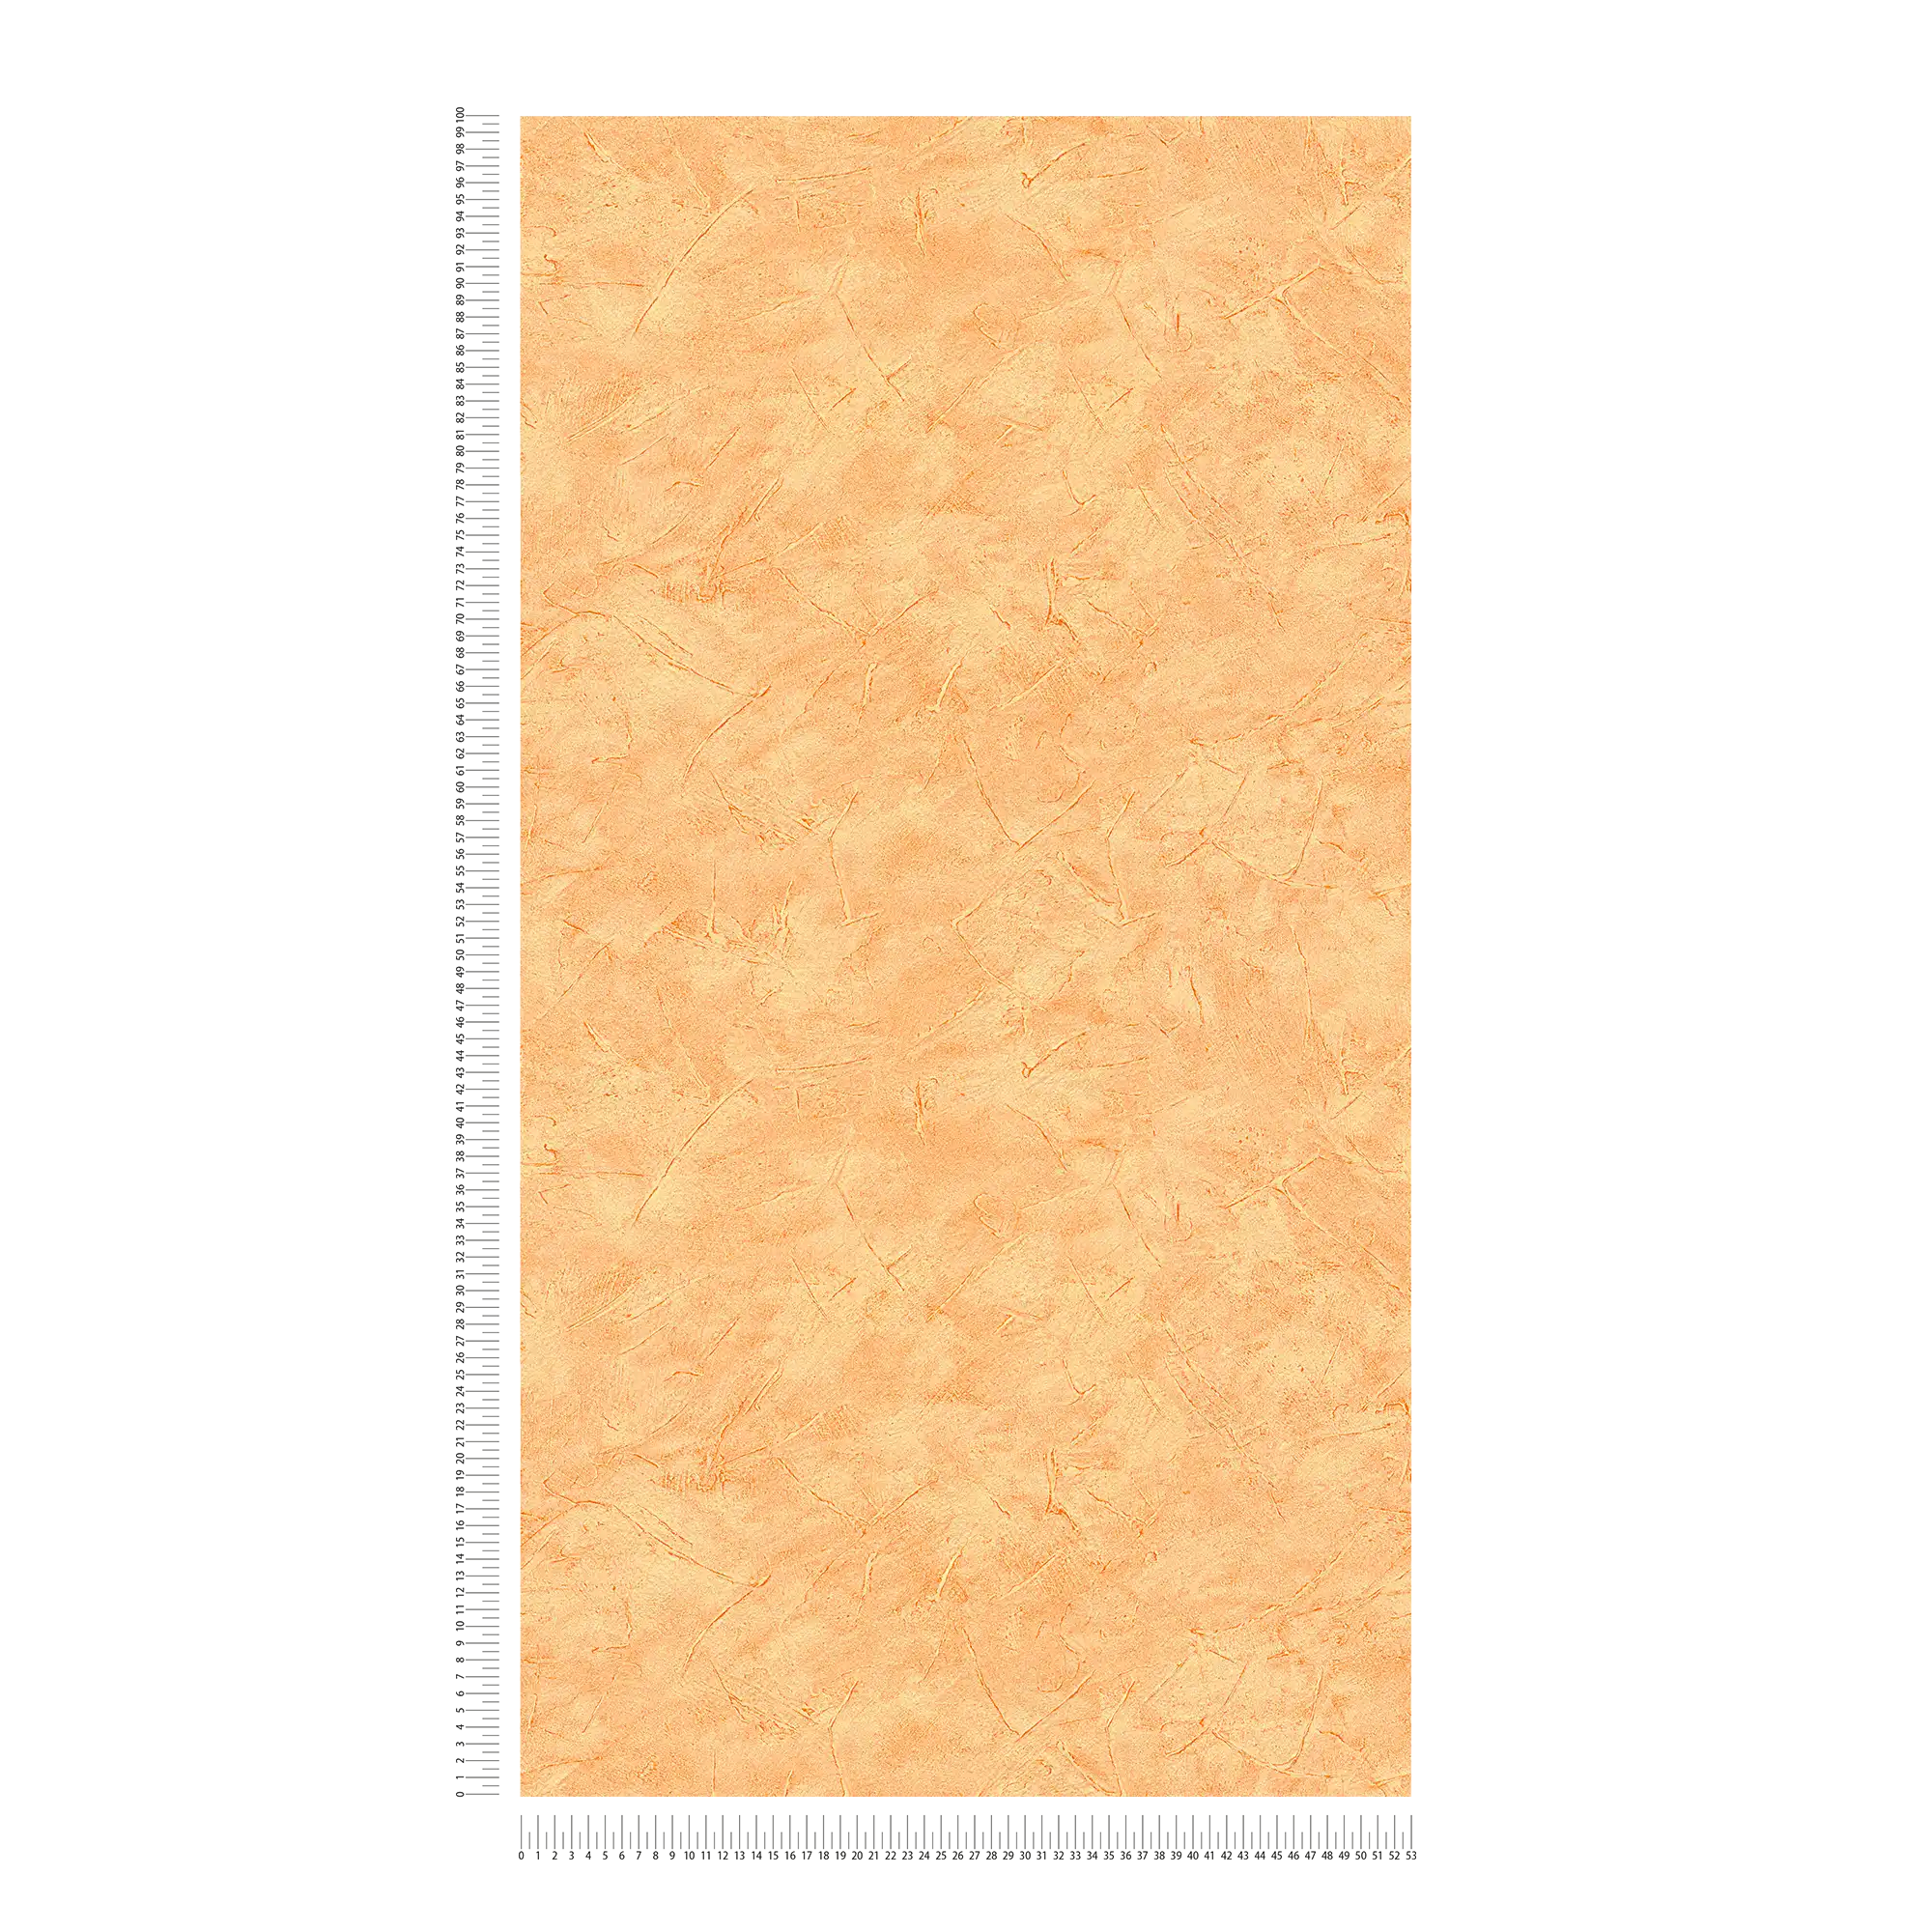             Papier peint effet plâtre avec motif de balayage et de hachures - Orange
        